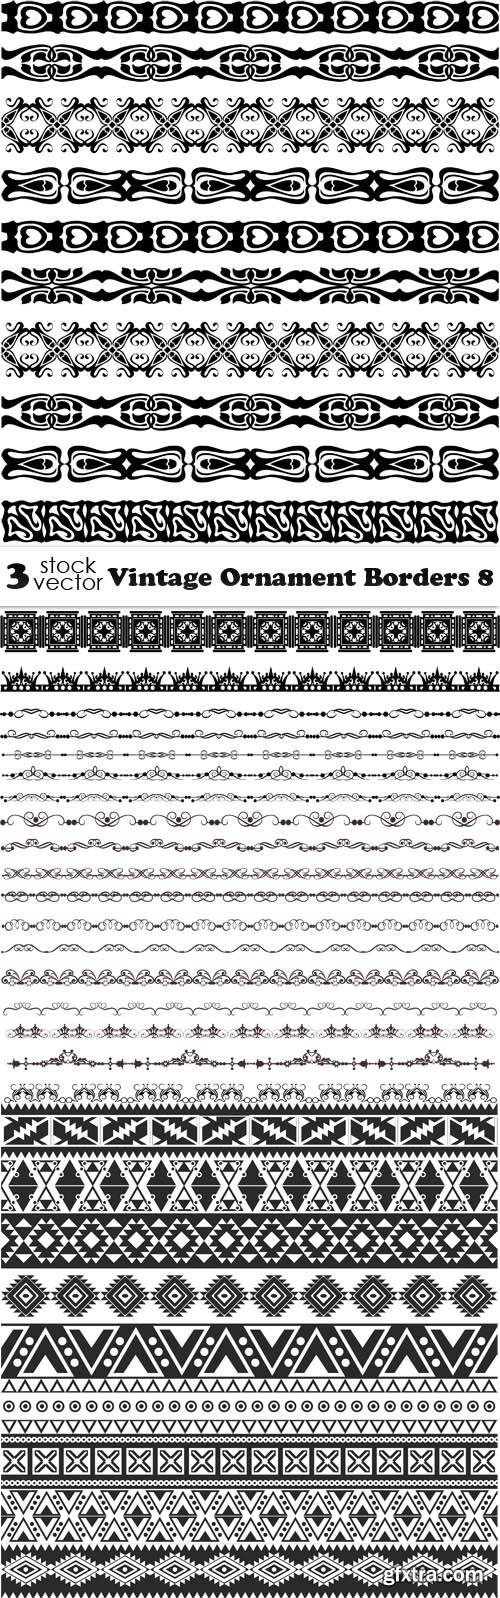 Vectors - Vintage Ornament Borders 8